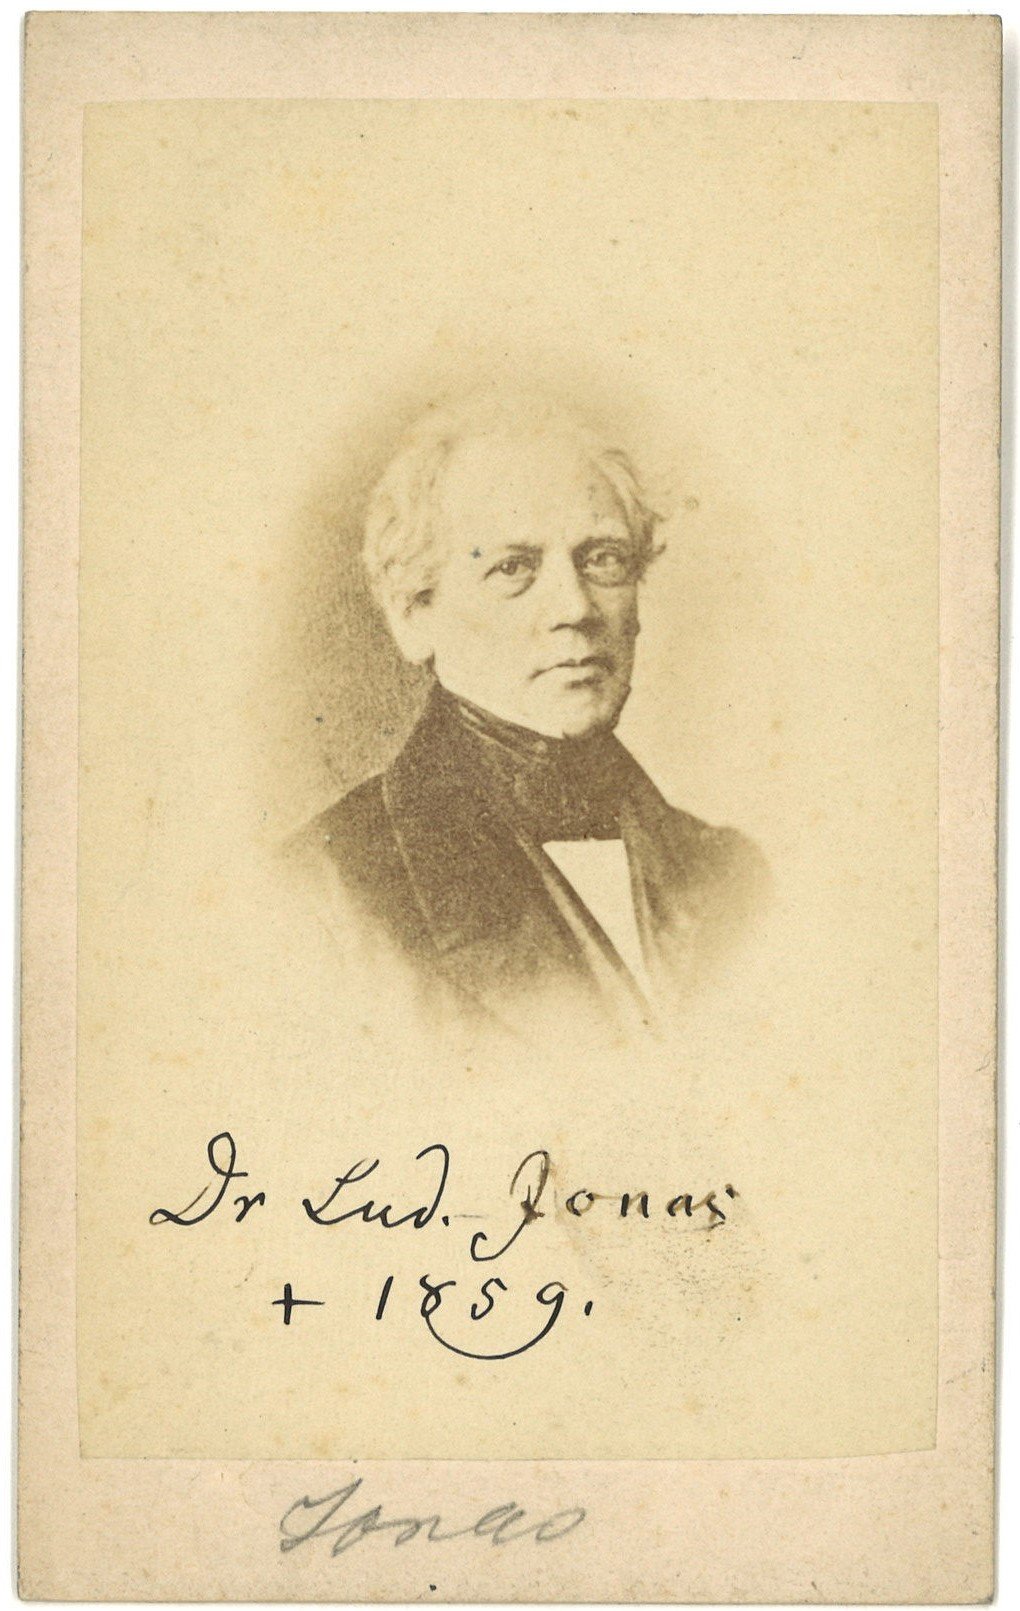 Jonas, Ludwig (1797-1859), Theologe, ev. Pfarrer in Berlin (Landesgeschichtliche Vereinigung für die Mark Brandenburg e.V., Archiv CC BY)